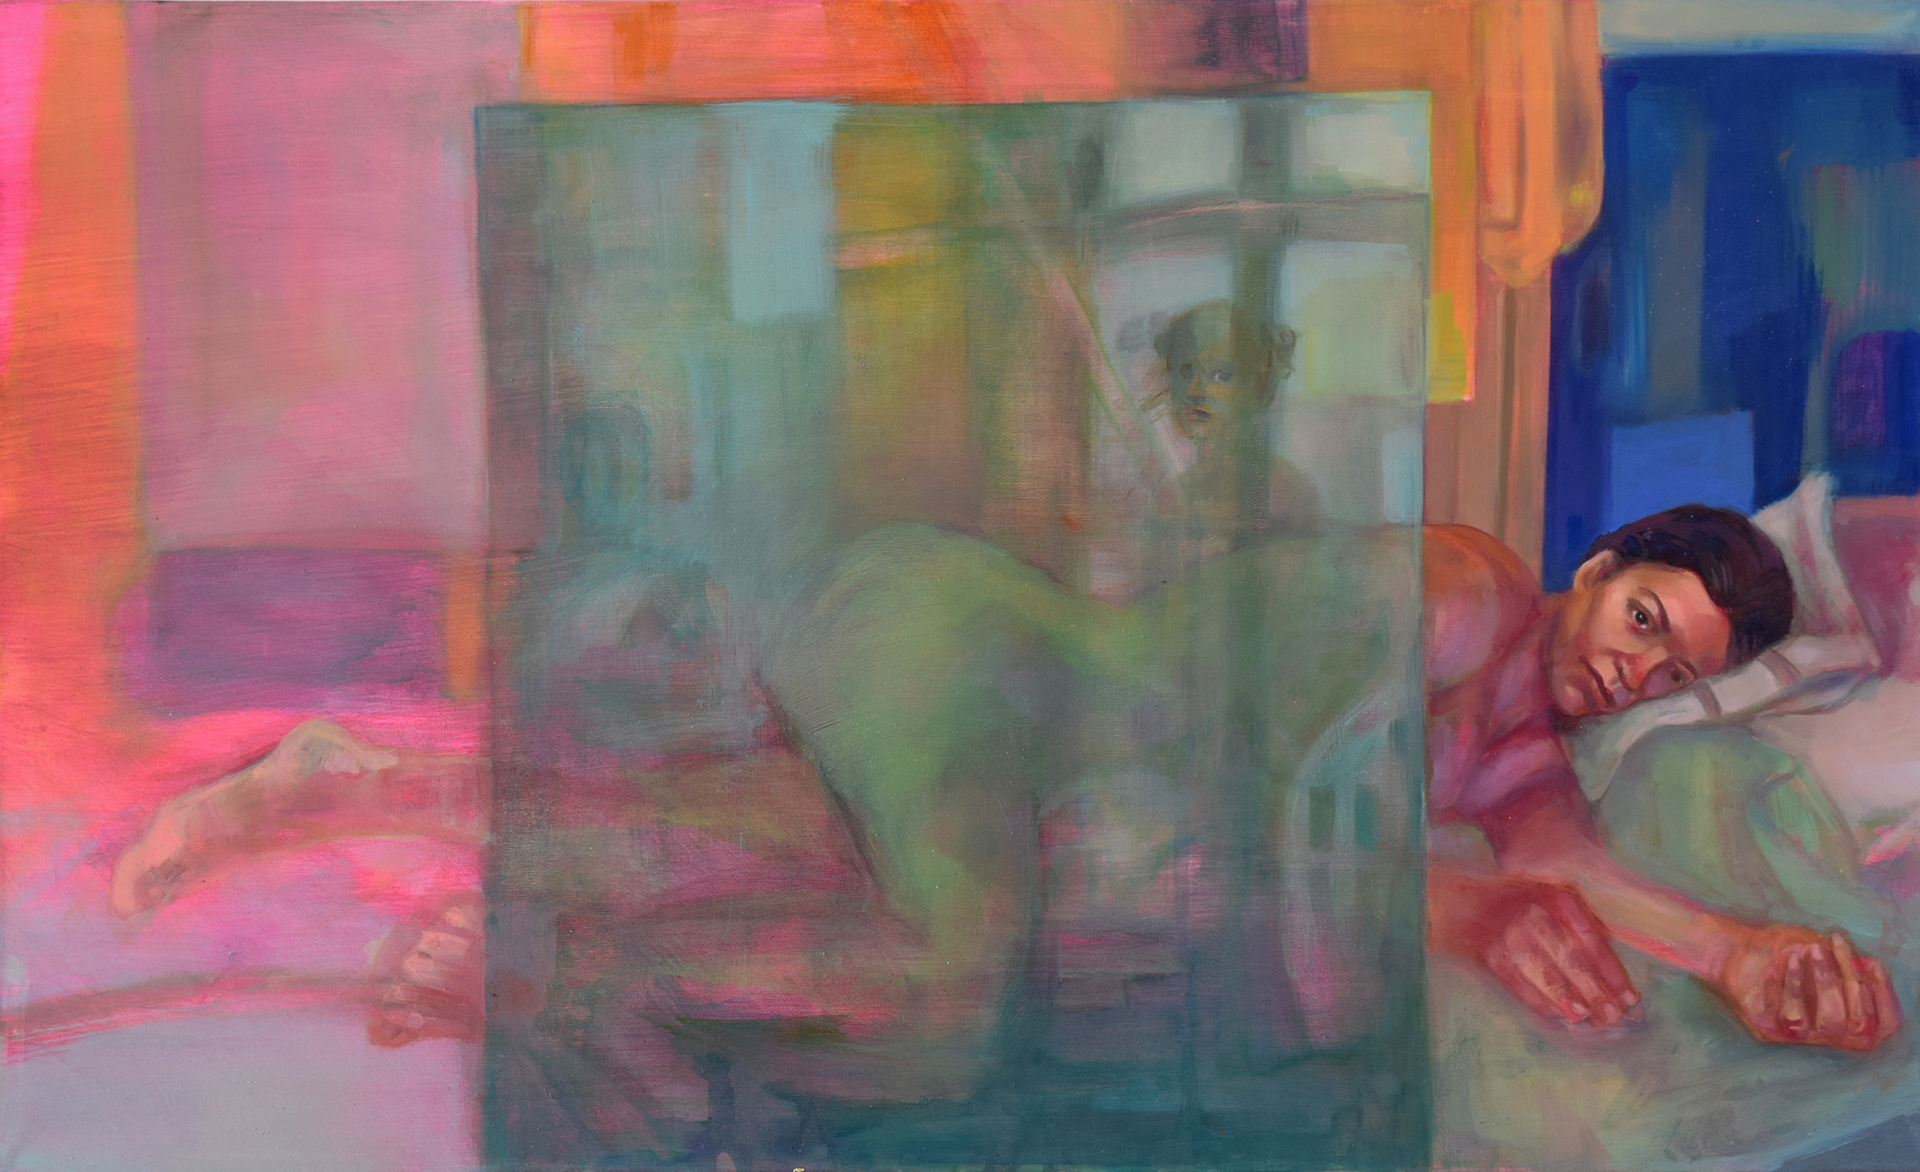 Leżąca naga kobieta, przed nią zielona szyba. W szybie odbijają się okna oraz druga postać - autorka obrazu.